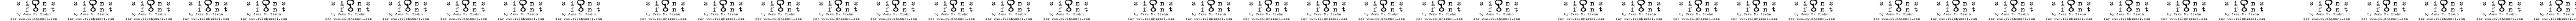 Пример написания шрифтом signs - zeichen 2.0 текста на белорусском